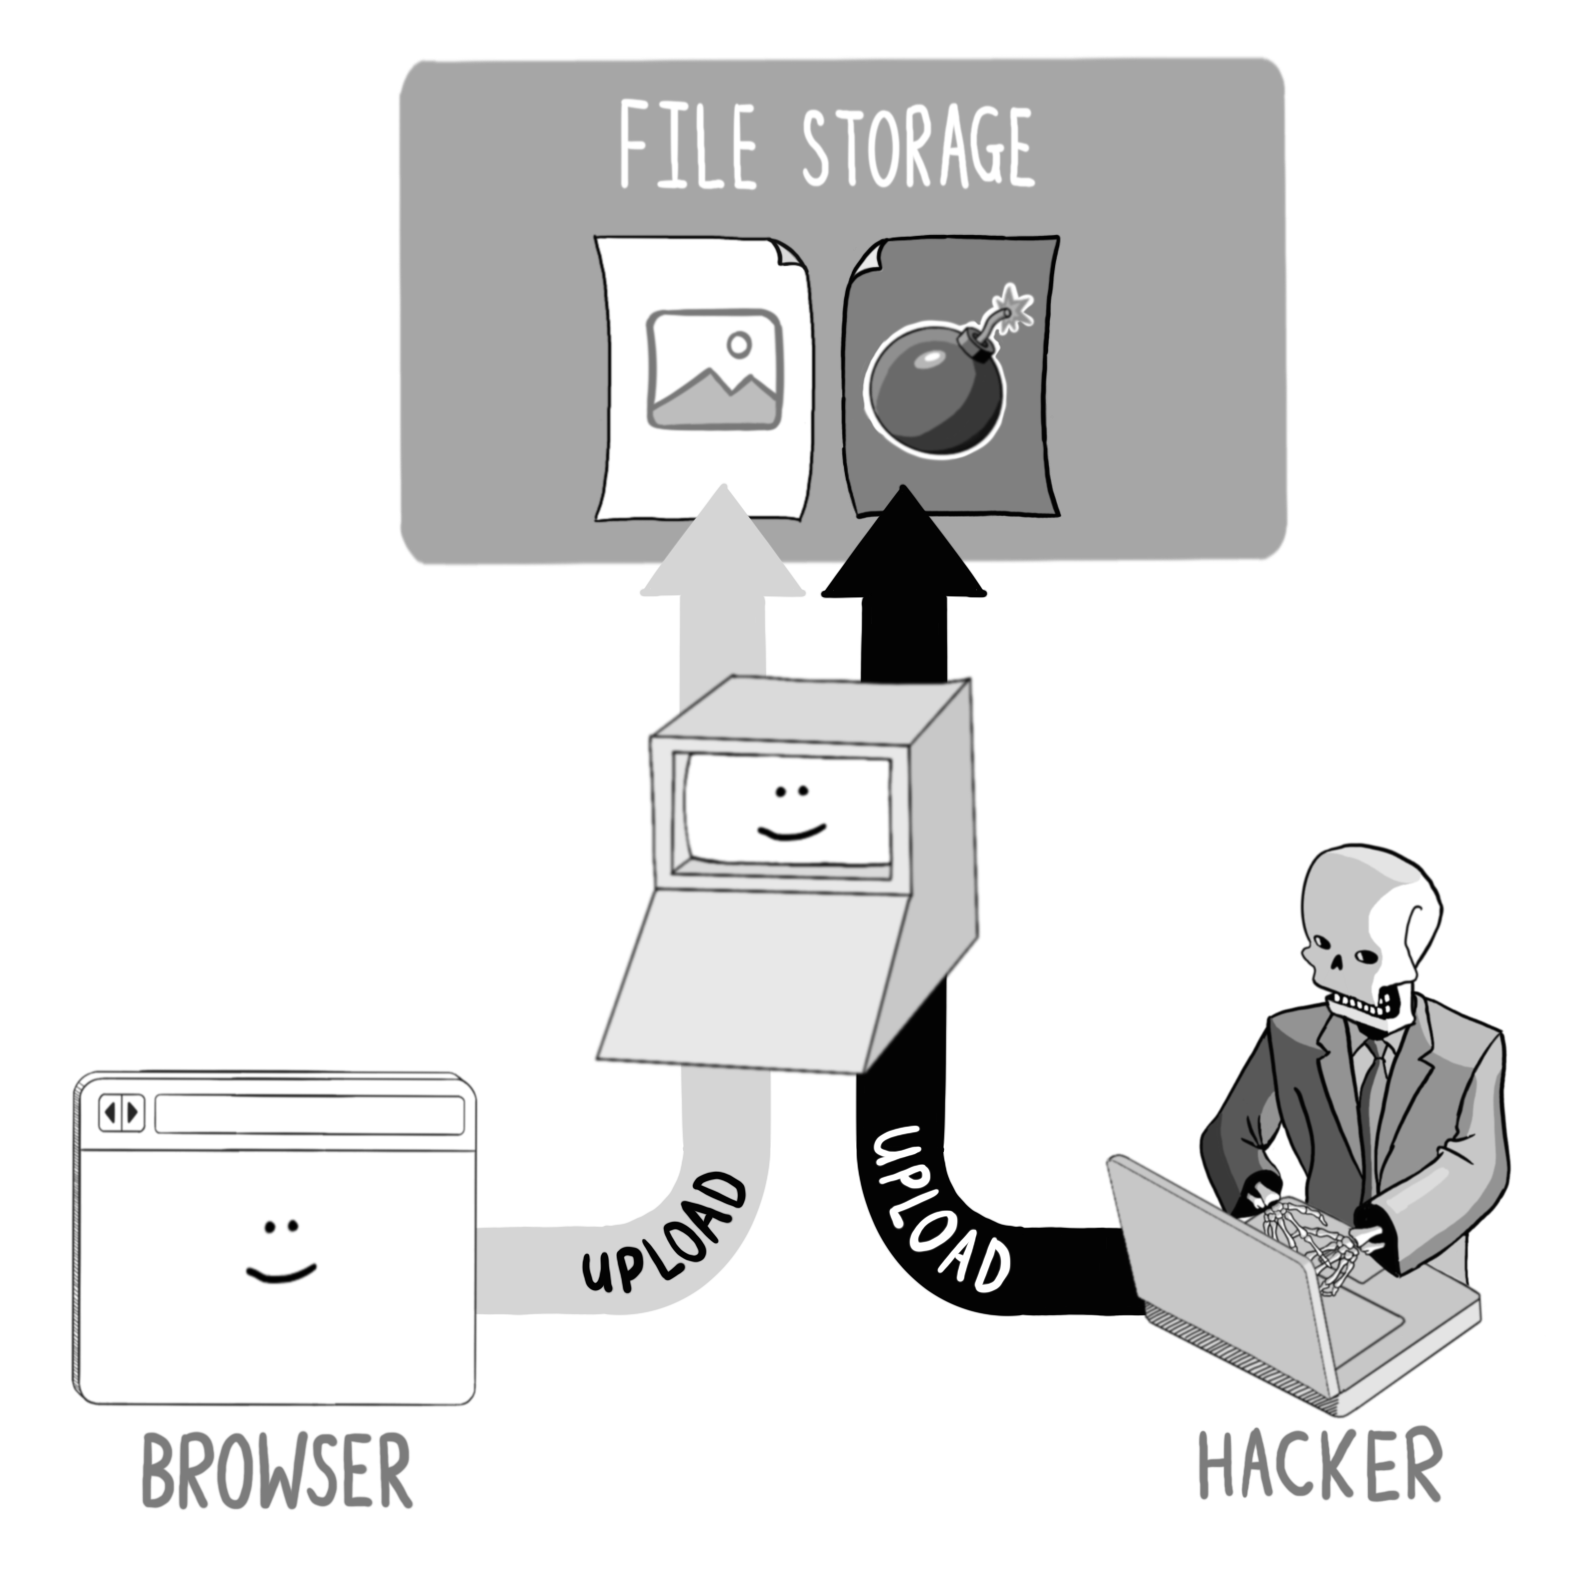 A file upload vulnerability